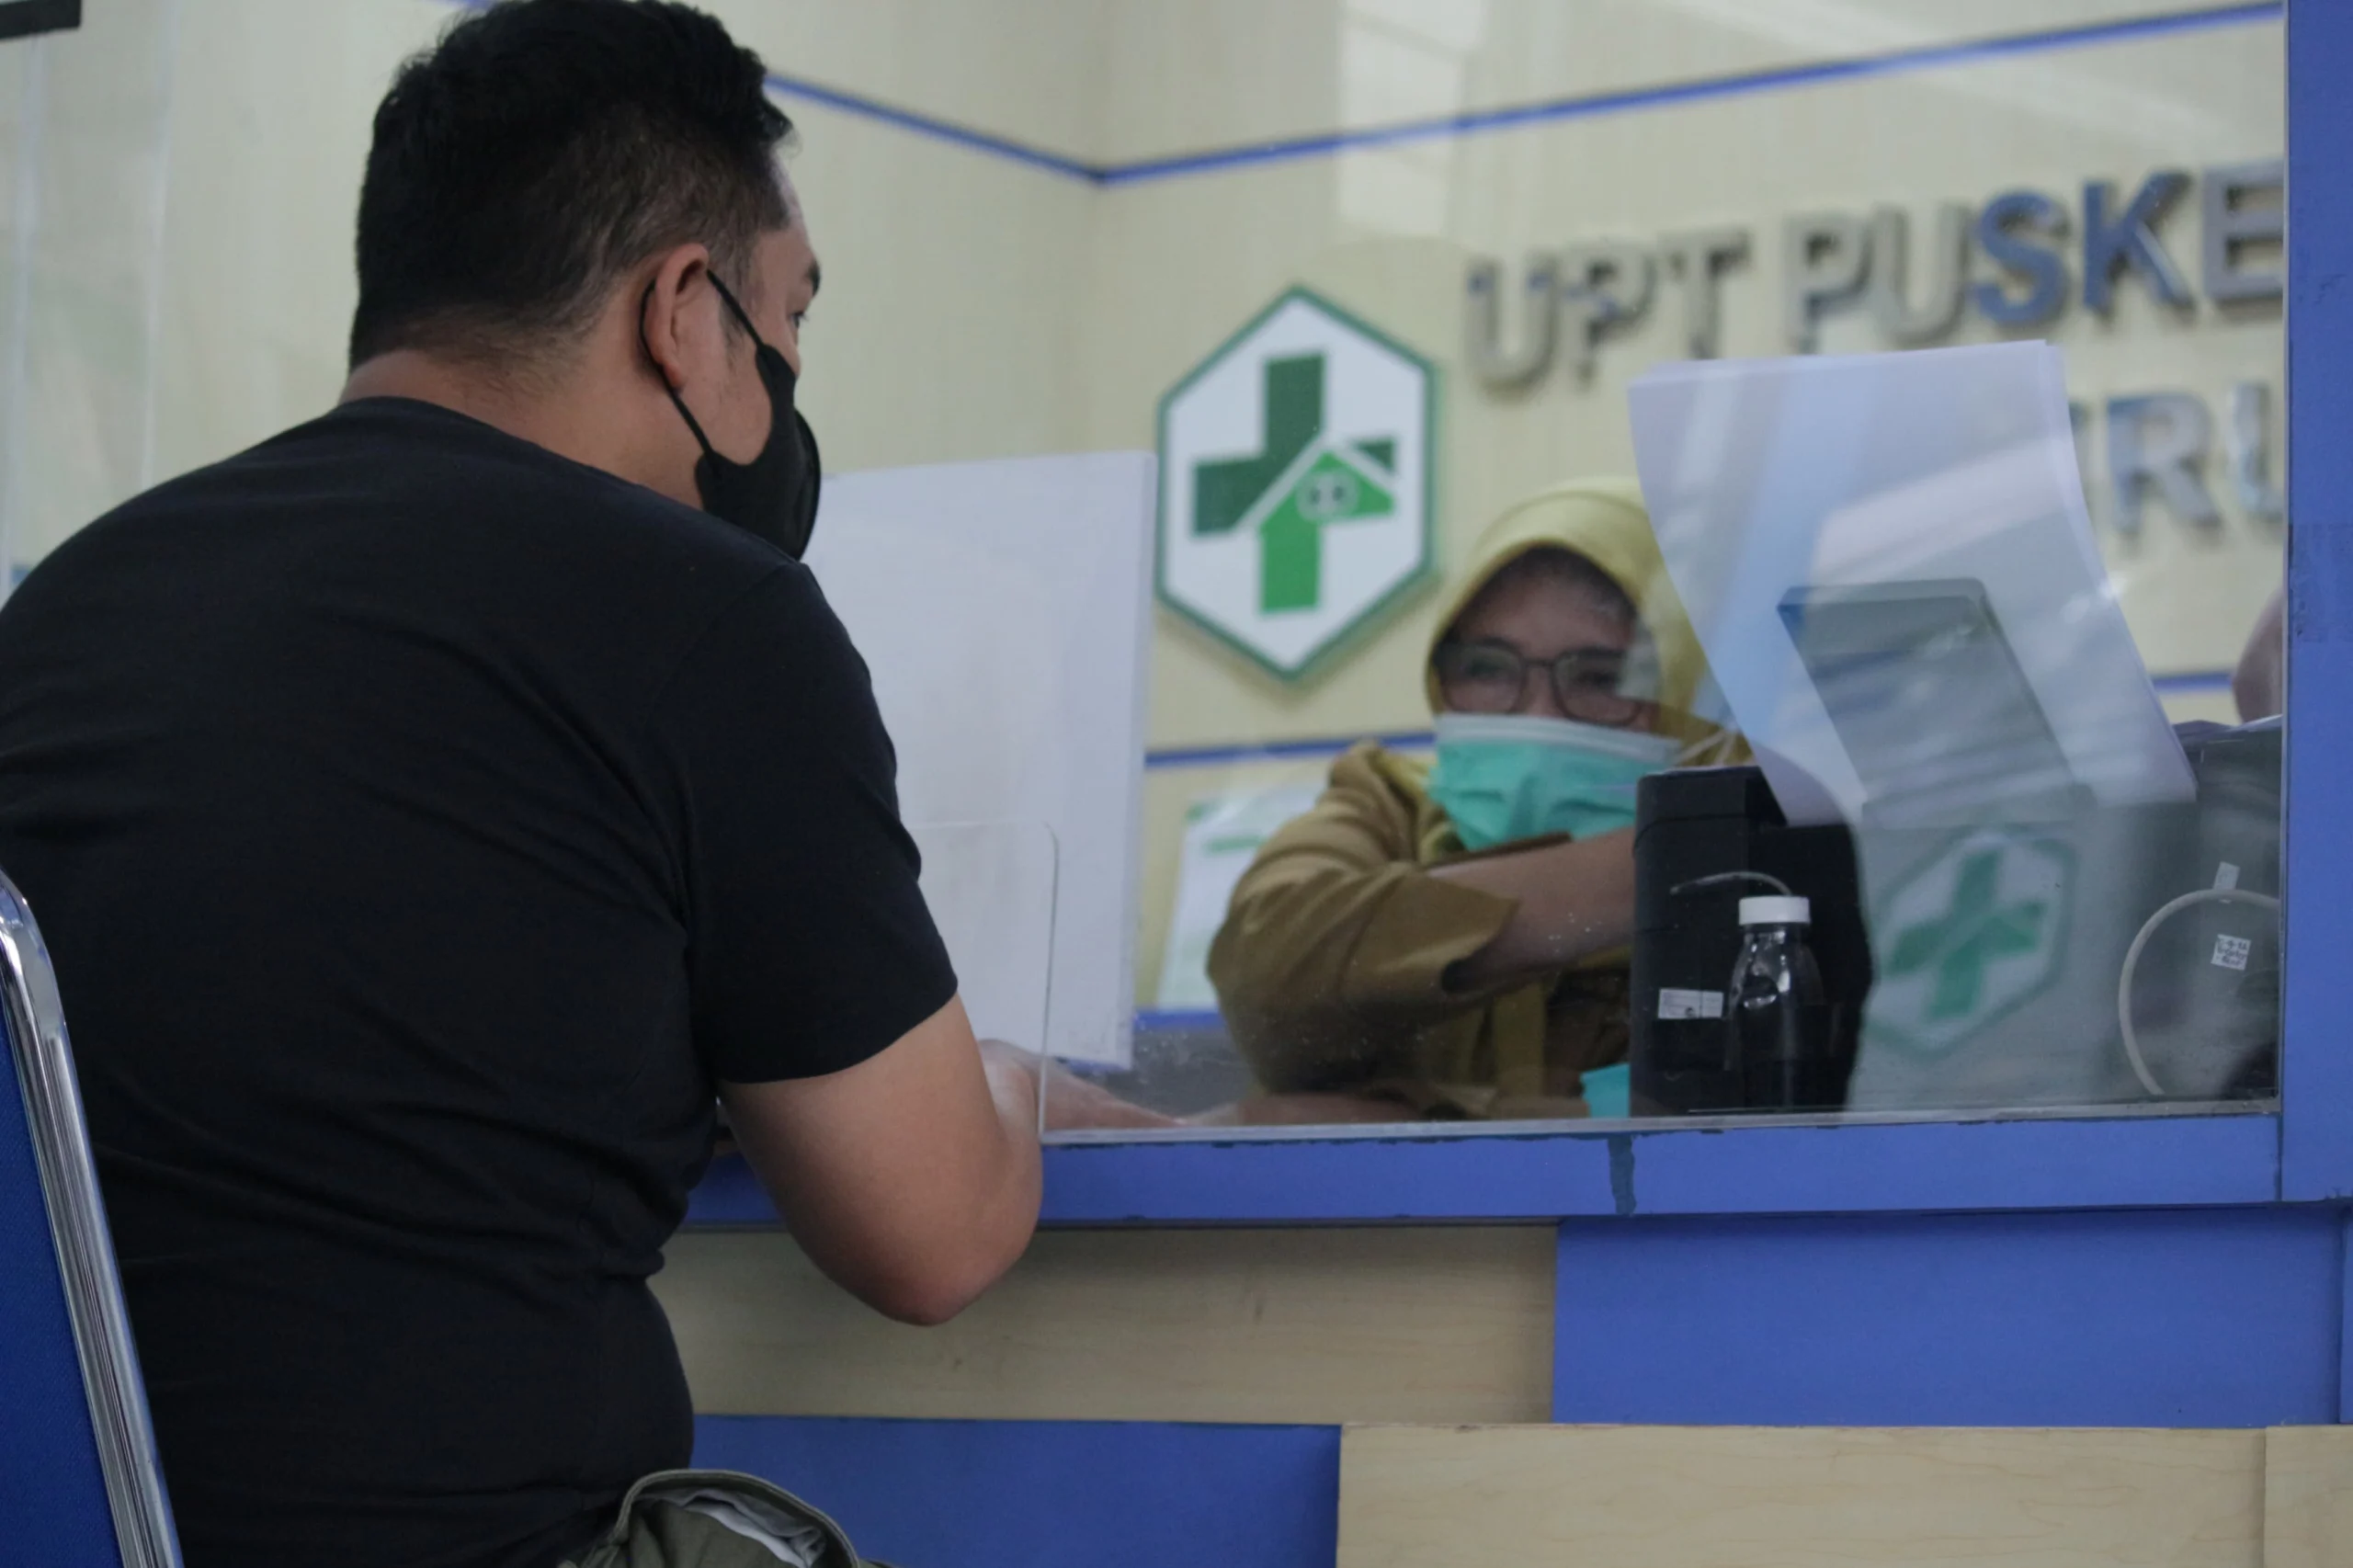 Pelayanan di UPT Puskesmas Cibiru, Kota Bandung. (Pandu Muslim/Jabar Ekspres)